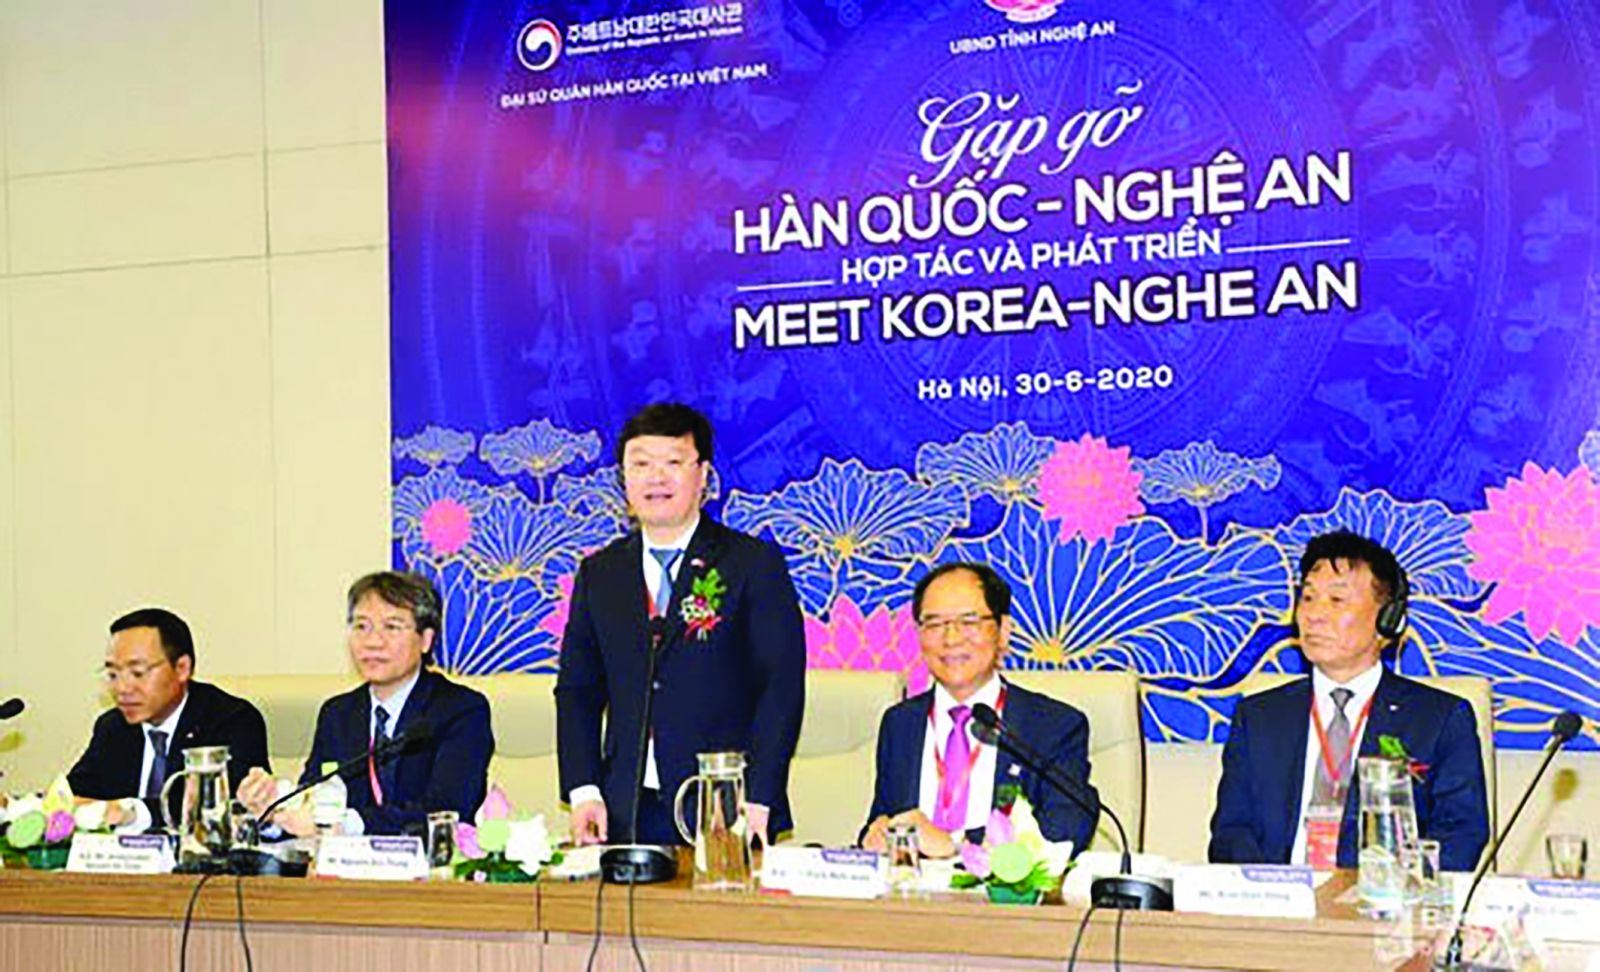  Vừa qua tỉnh Nghệ An tổ chức Hội nghị gặp gỡ Hàn Quốc - Nghệ An tại Hà Nội nhằm tăng cường hợp tác, quảng bá. (Ảnh Phạm Bằng)